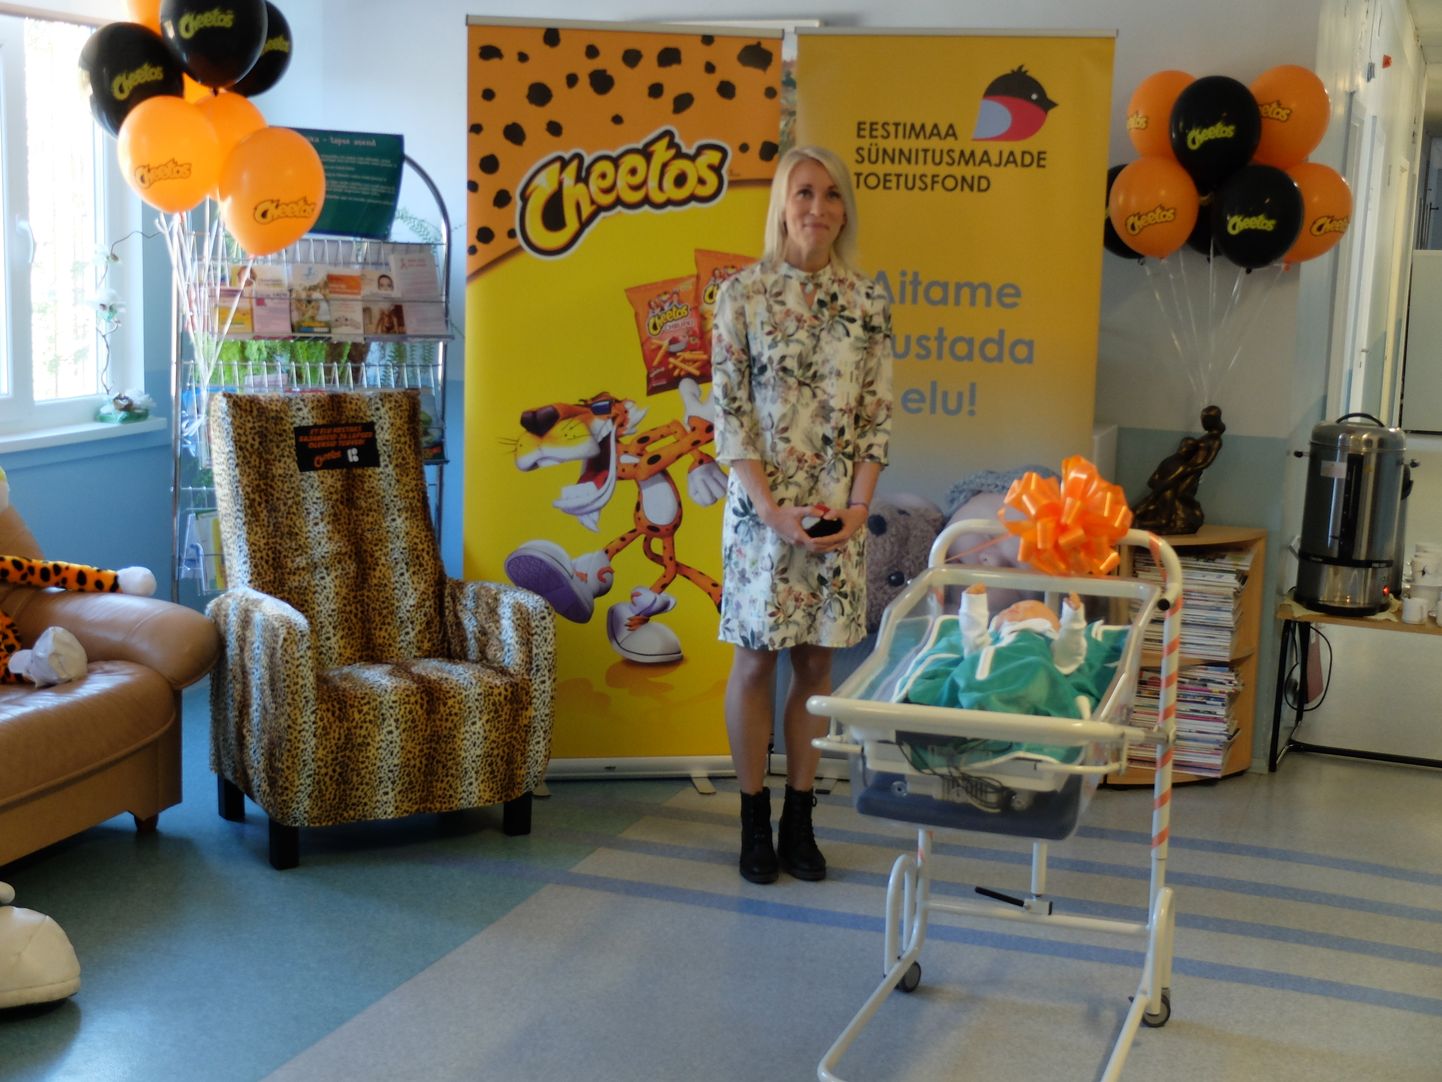 Eestimaa sünnitusmajade toetusfondi tegevjuht Mary Teras kingituse üleandmisel.